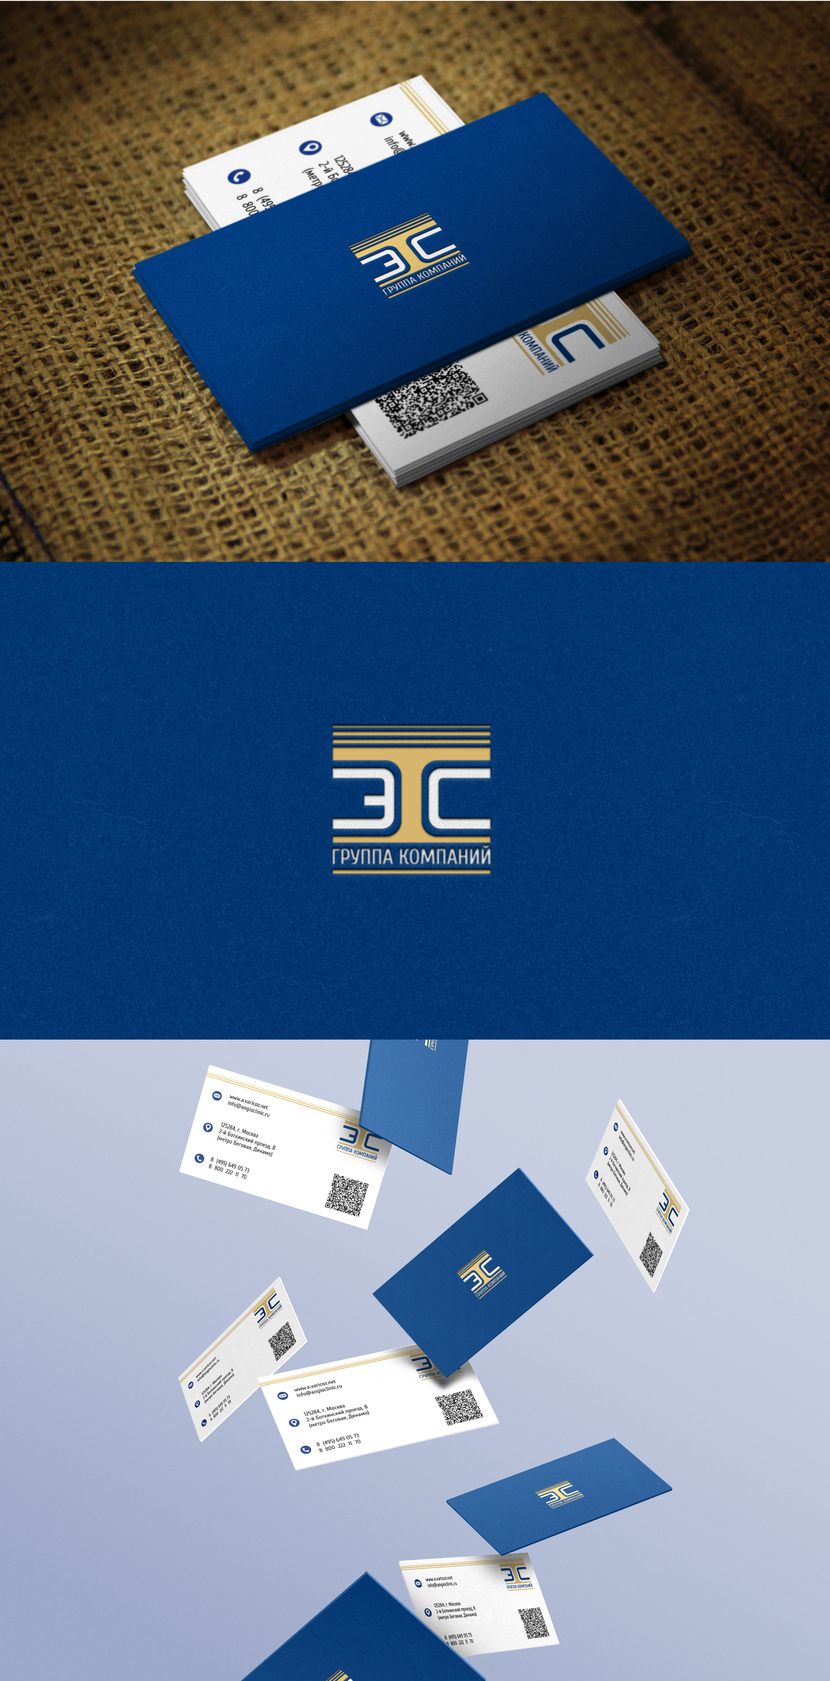 v2 - Доработка логотипа и создание на его основе фирменного стиля для группы компаний "ТЭС"